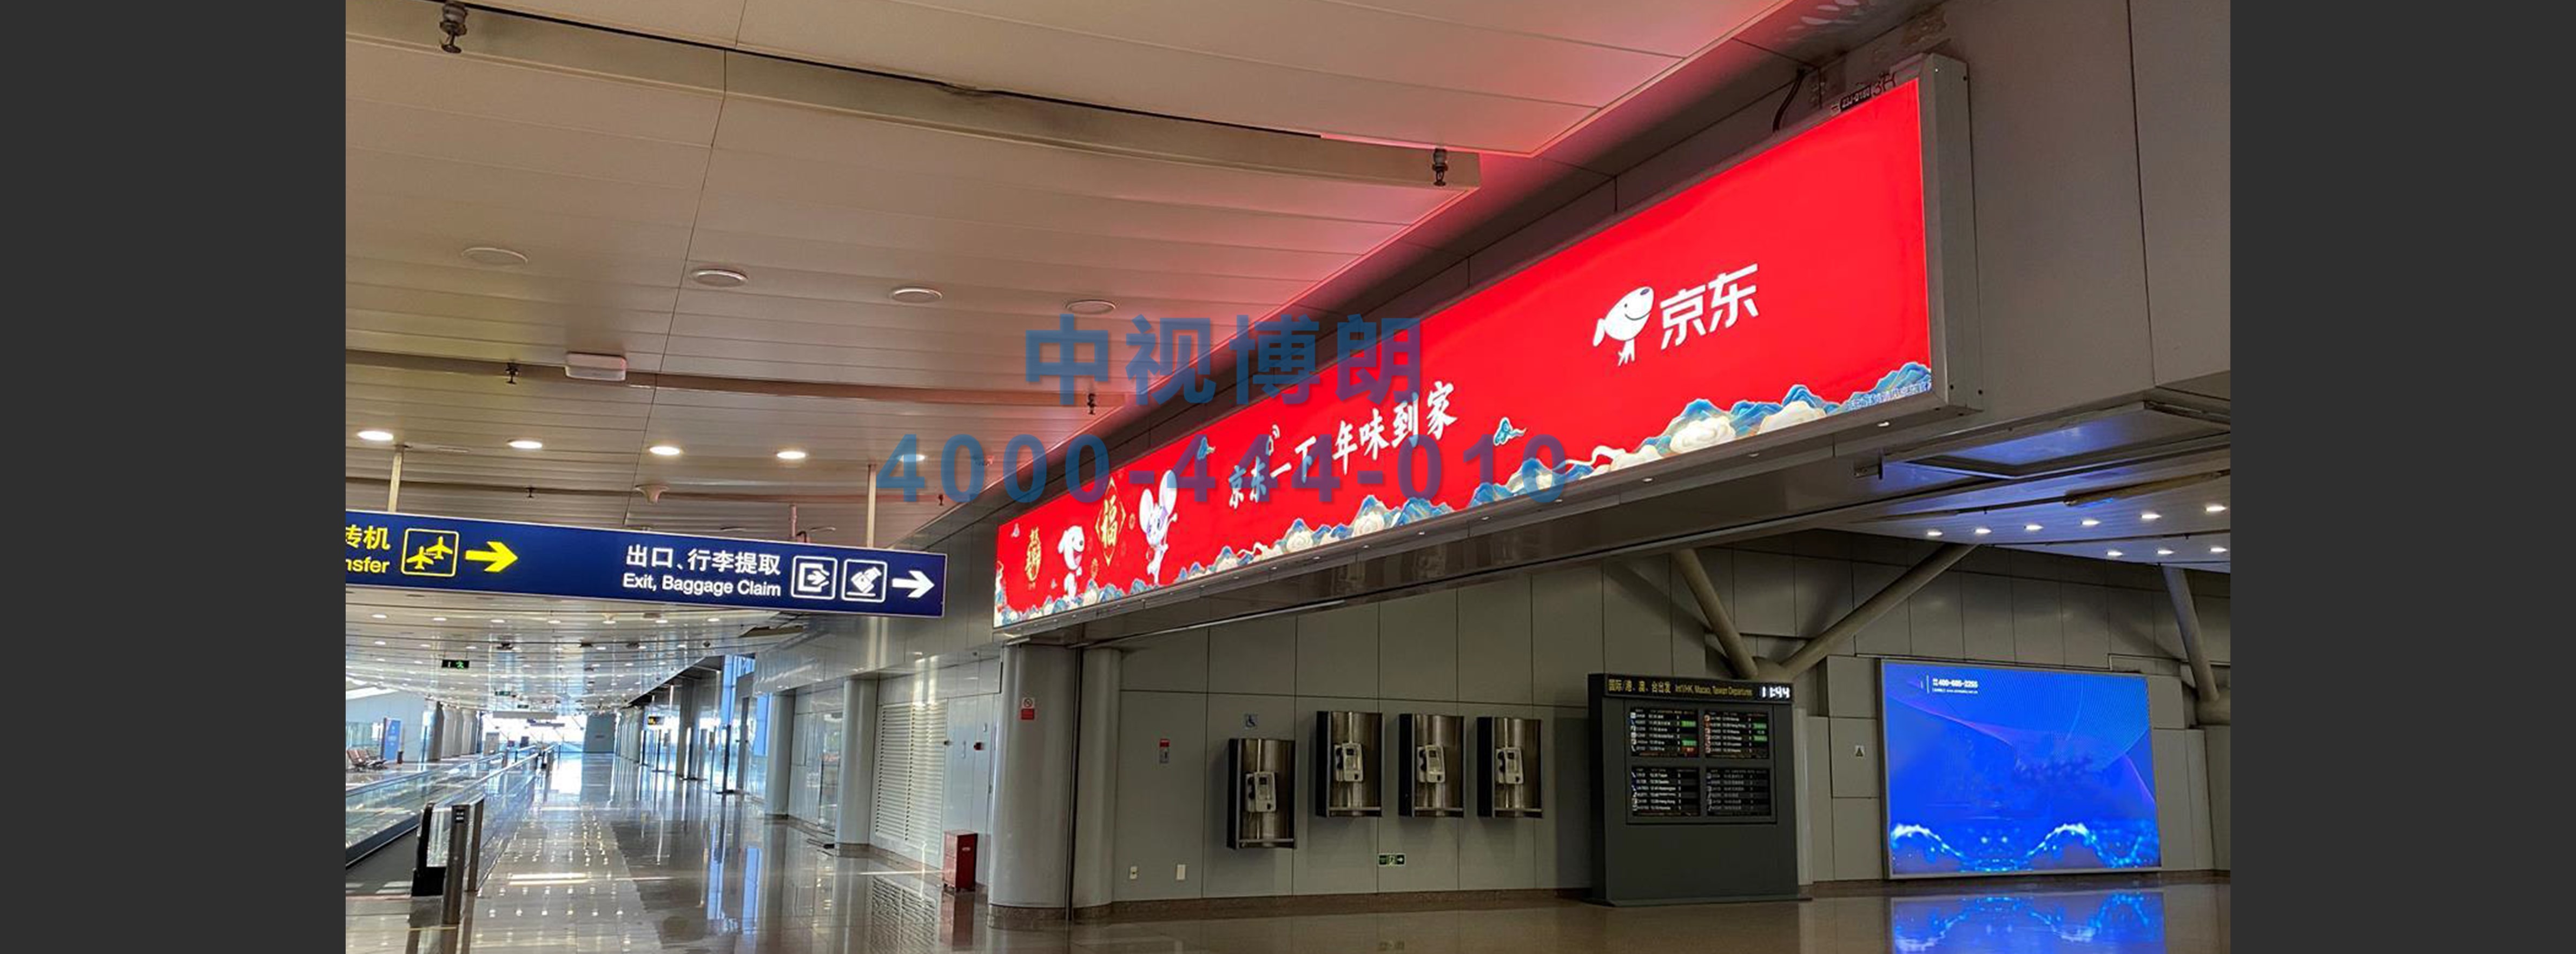 北京首都机场广告-T2国际到达通廊灯箱D180